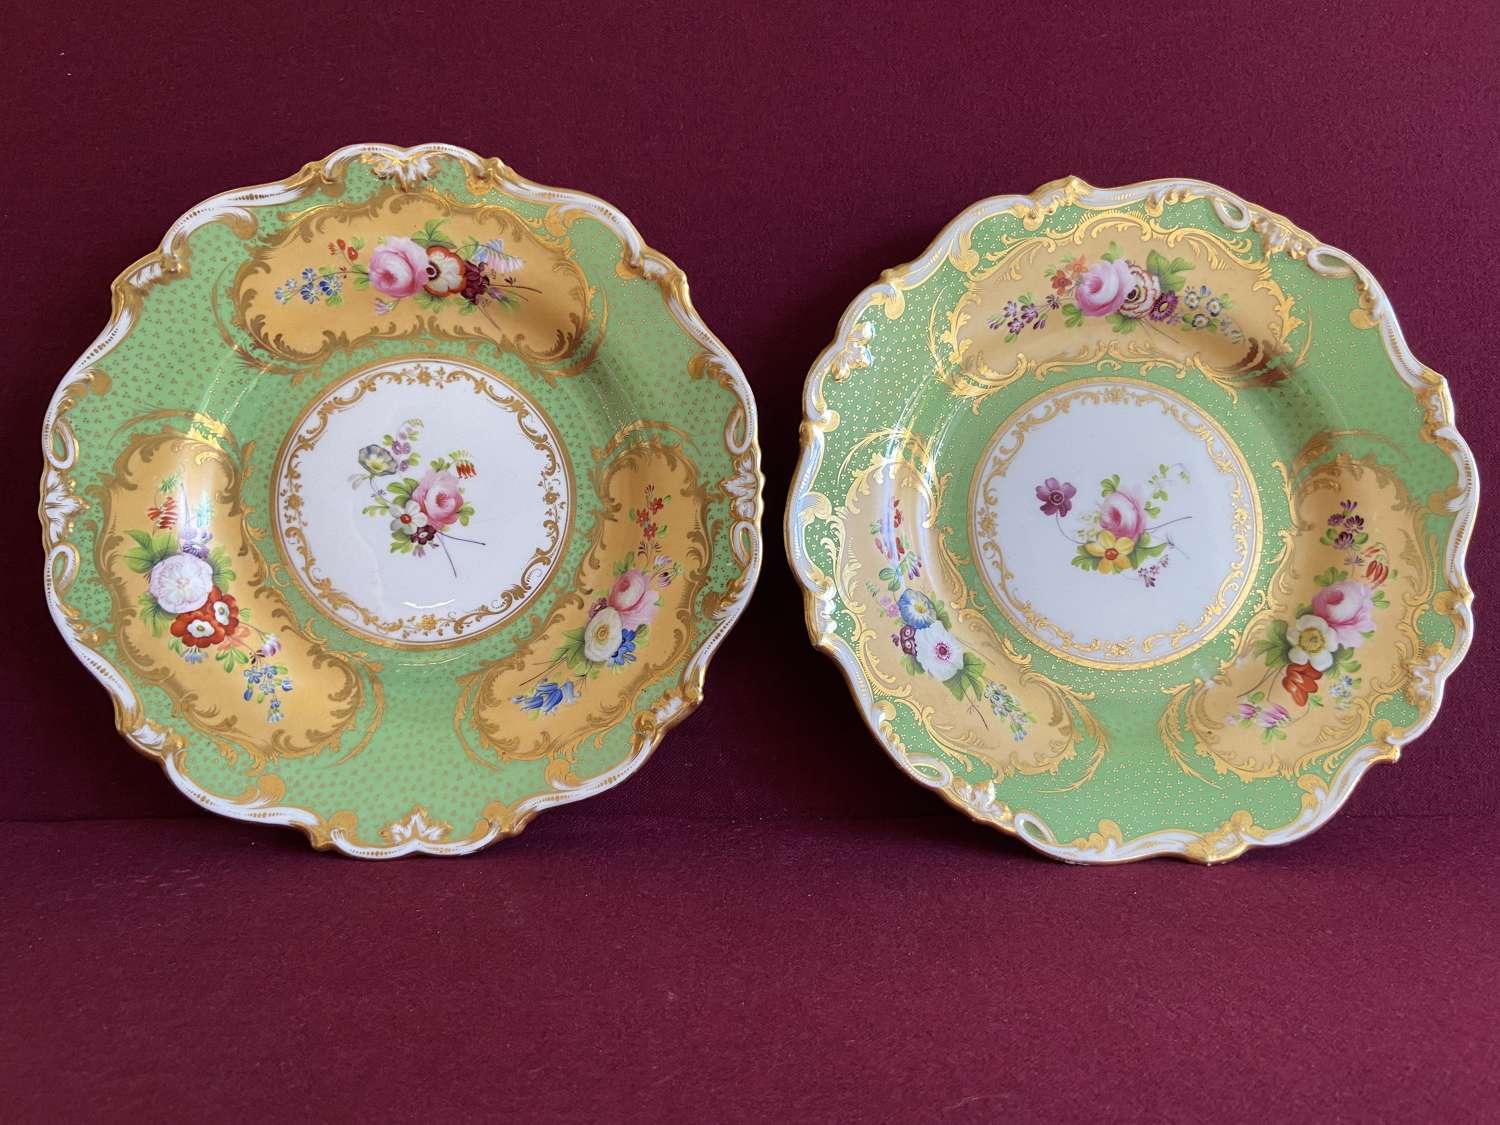 A fine pair of Minton porcelain dessert plates c.1835